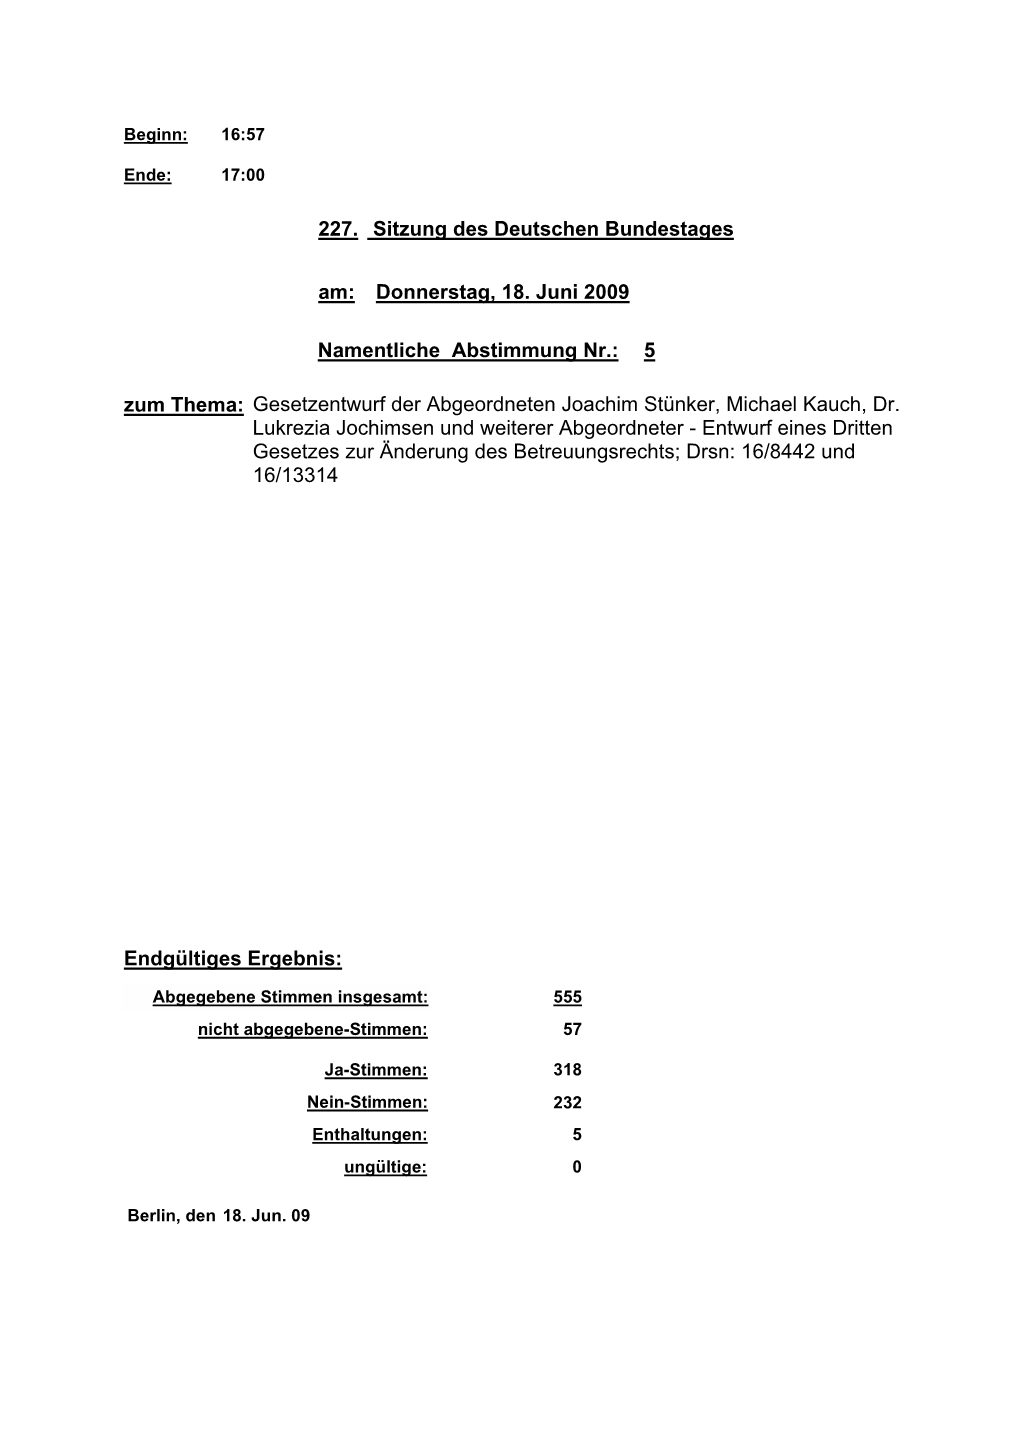 Namentliche Abstimmung Nr.: 5 Zum Thema: Gesetzentwurf Der Abgeordneten Joachim Stünker, Michael Kauch, Dr